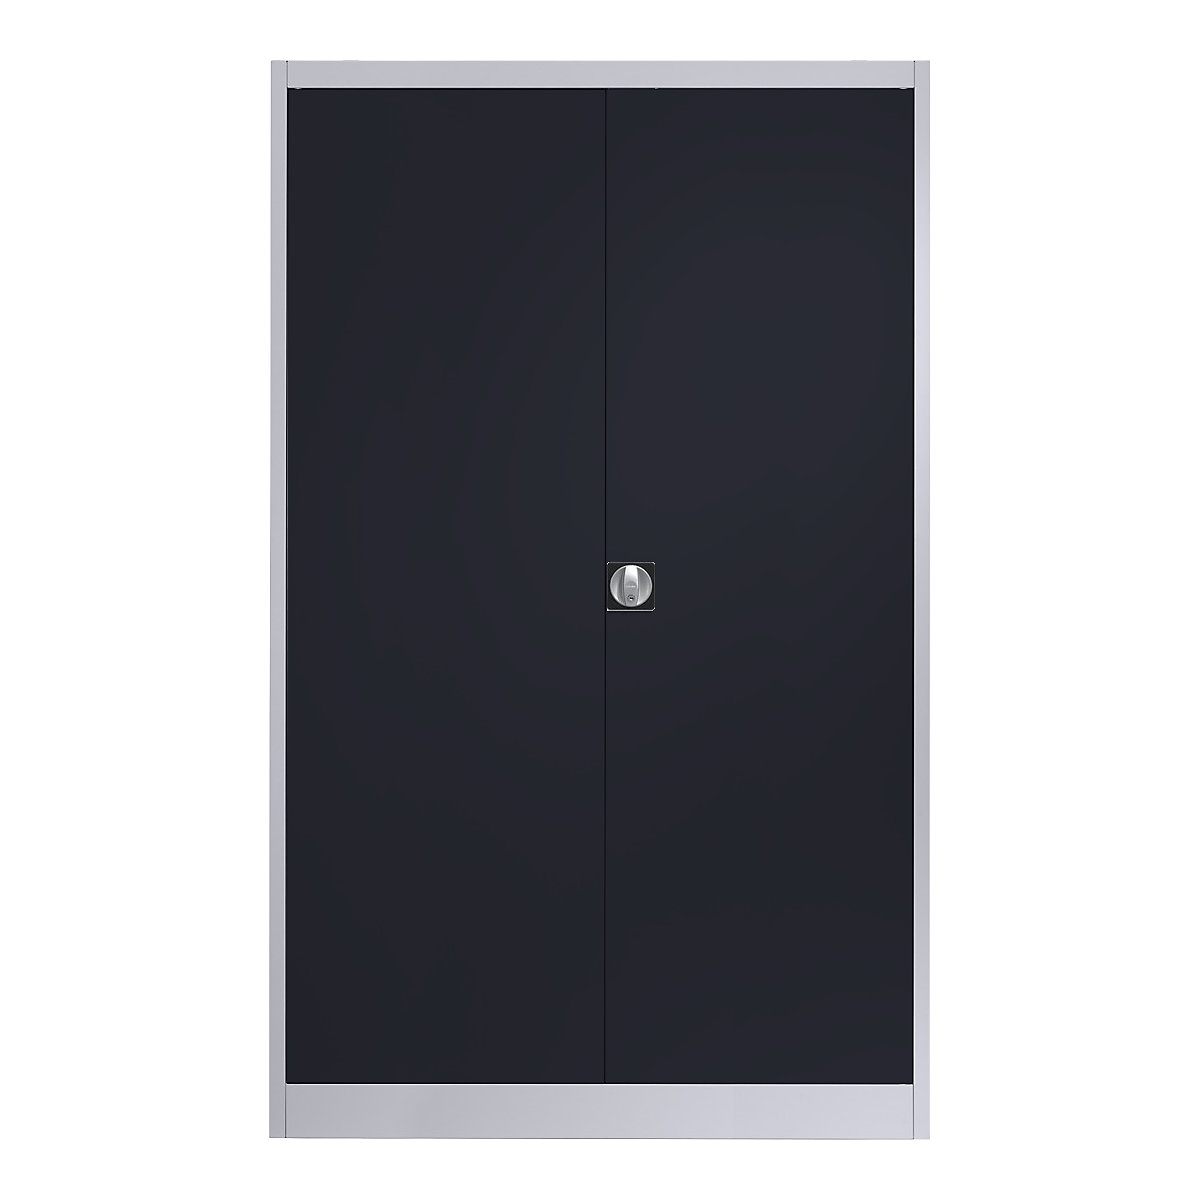 Szárnyas-ajtós acélszekrény – mauser, 4 polc, szélesség 1200 mm, fehéralumínium / antracitszürke, külső mélység 600 mm-7